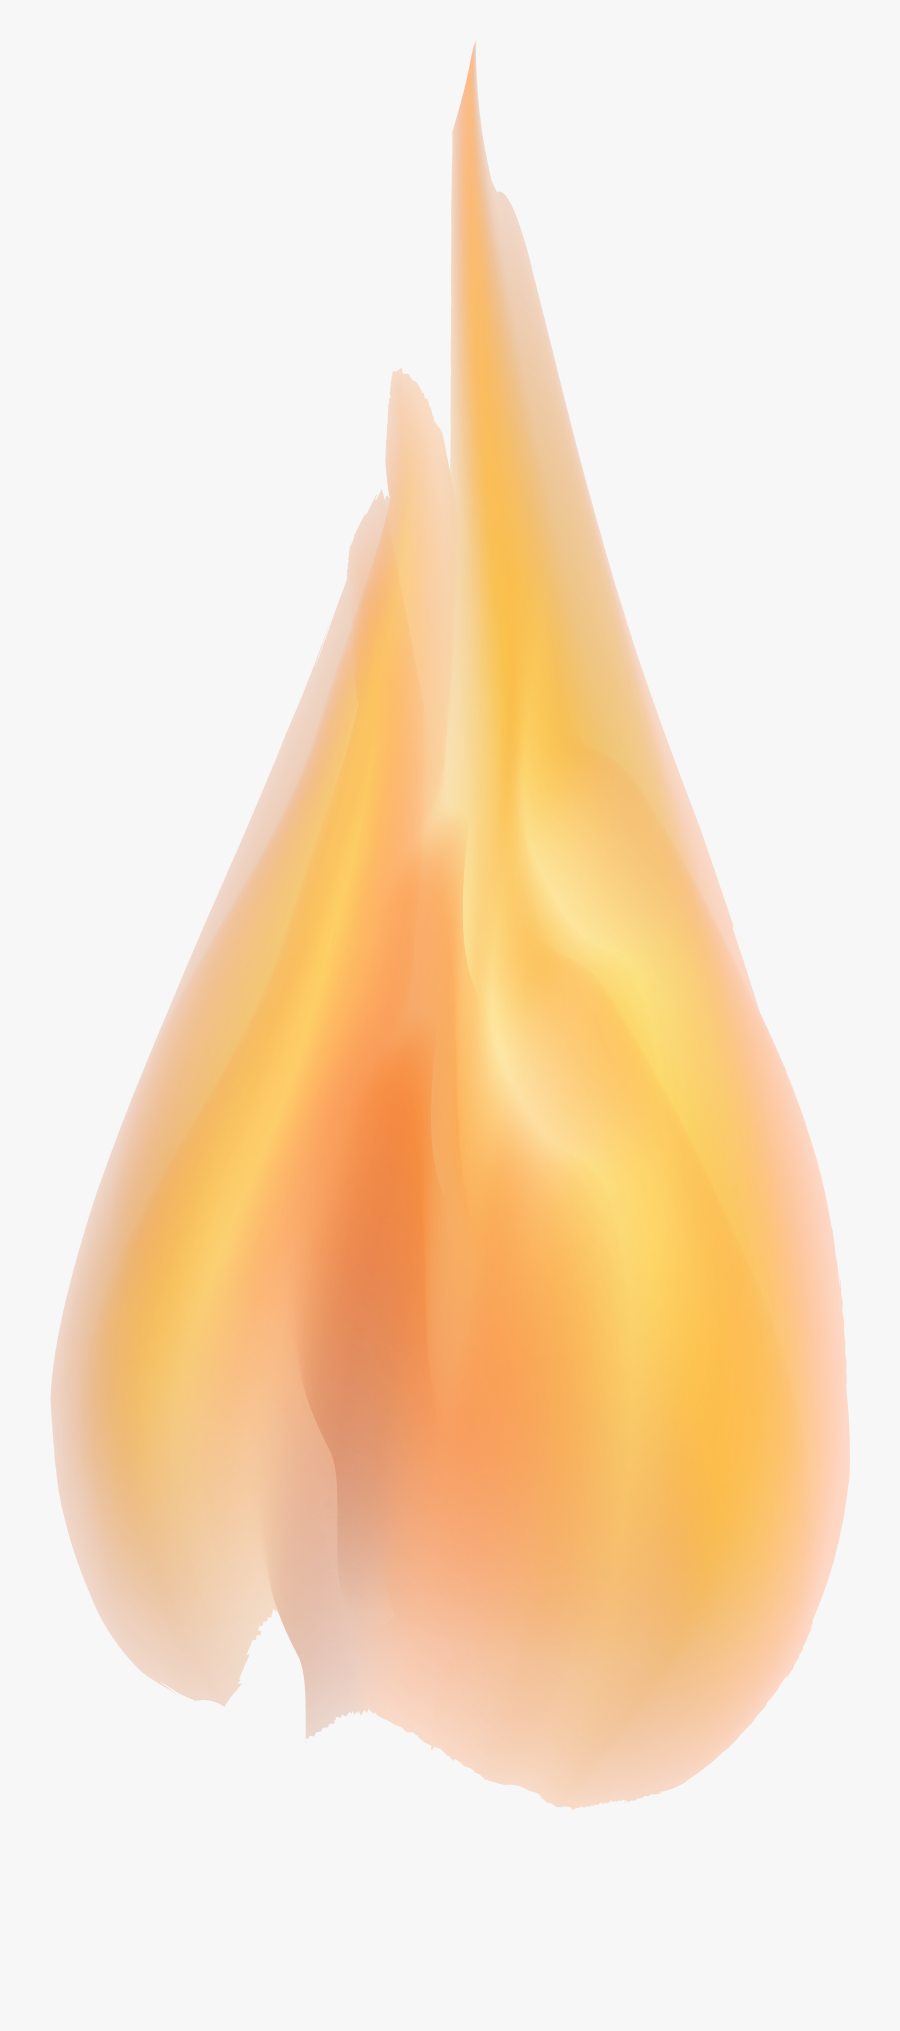 Fire Transparent Clipart Flame Clip Art Background - Pear, Transparent Clipart